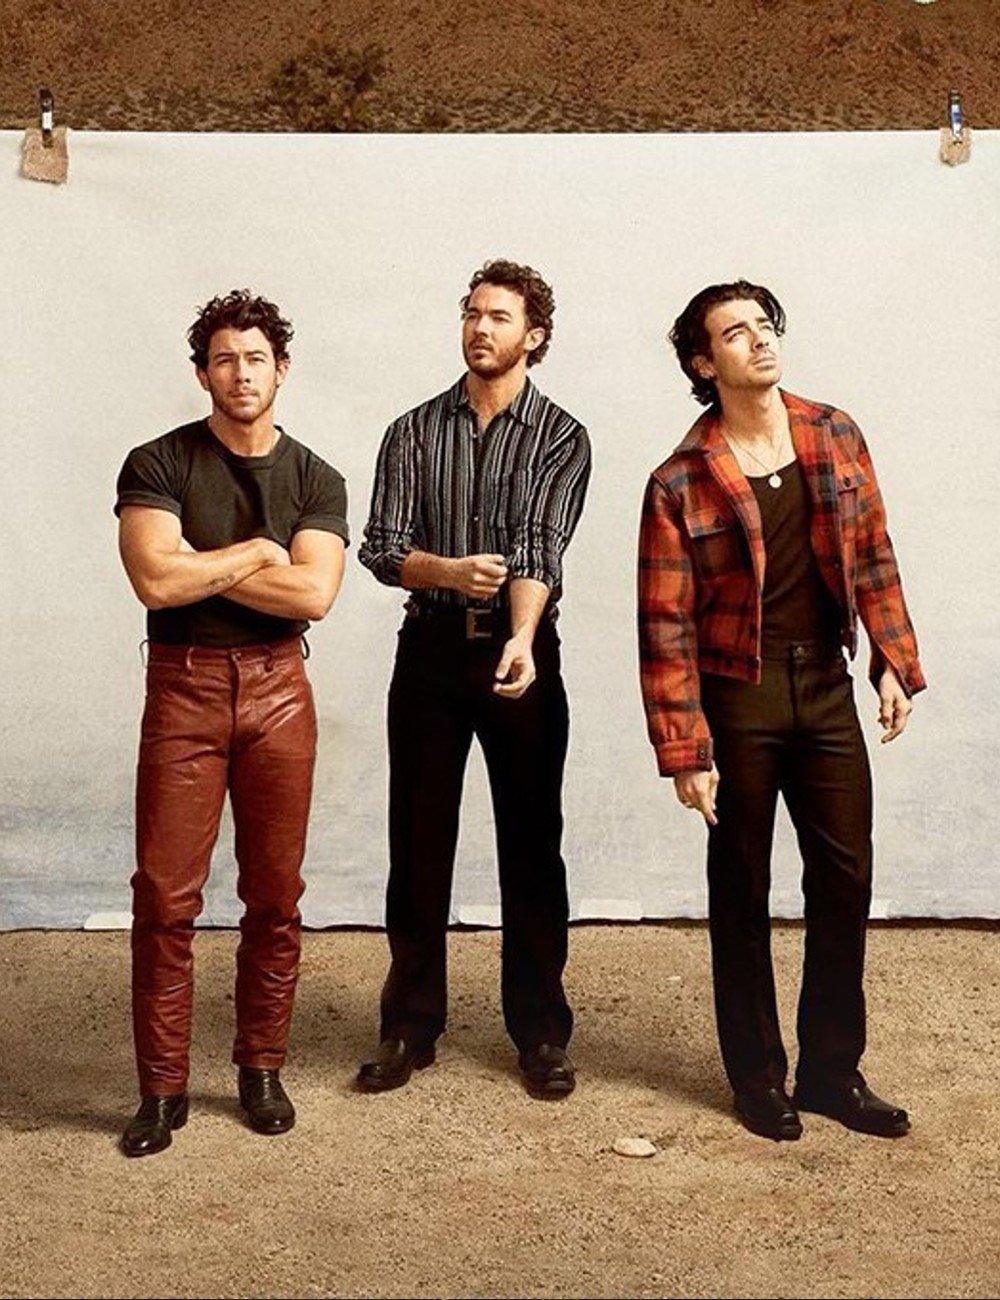 Jonas Brothers - Jonas Brothers - Jonas Brothers - inverno - divulgação - https://stealthelook.com.br